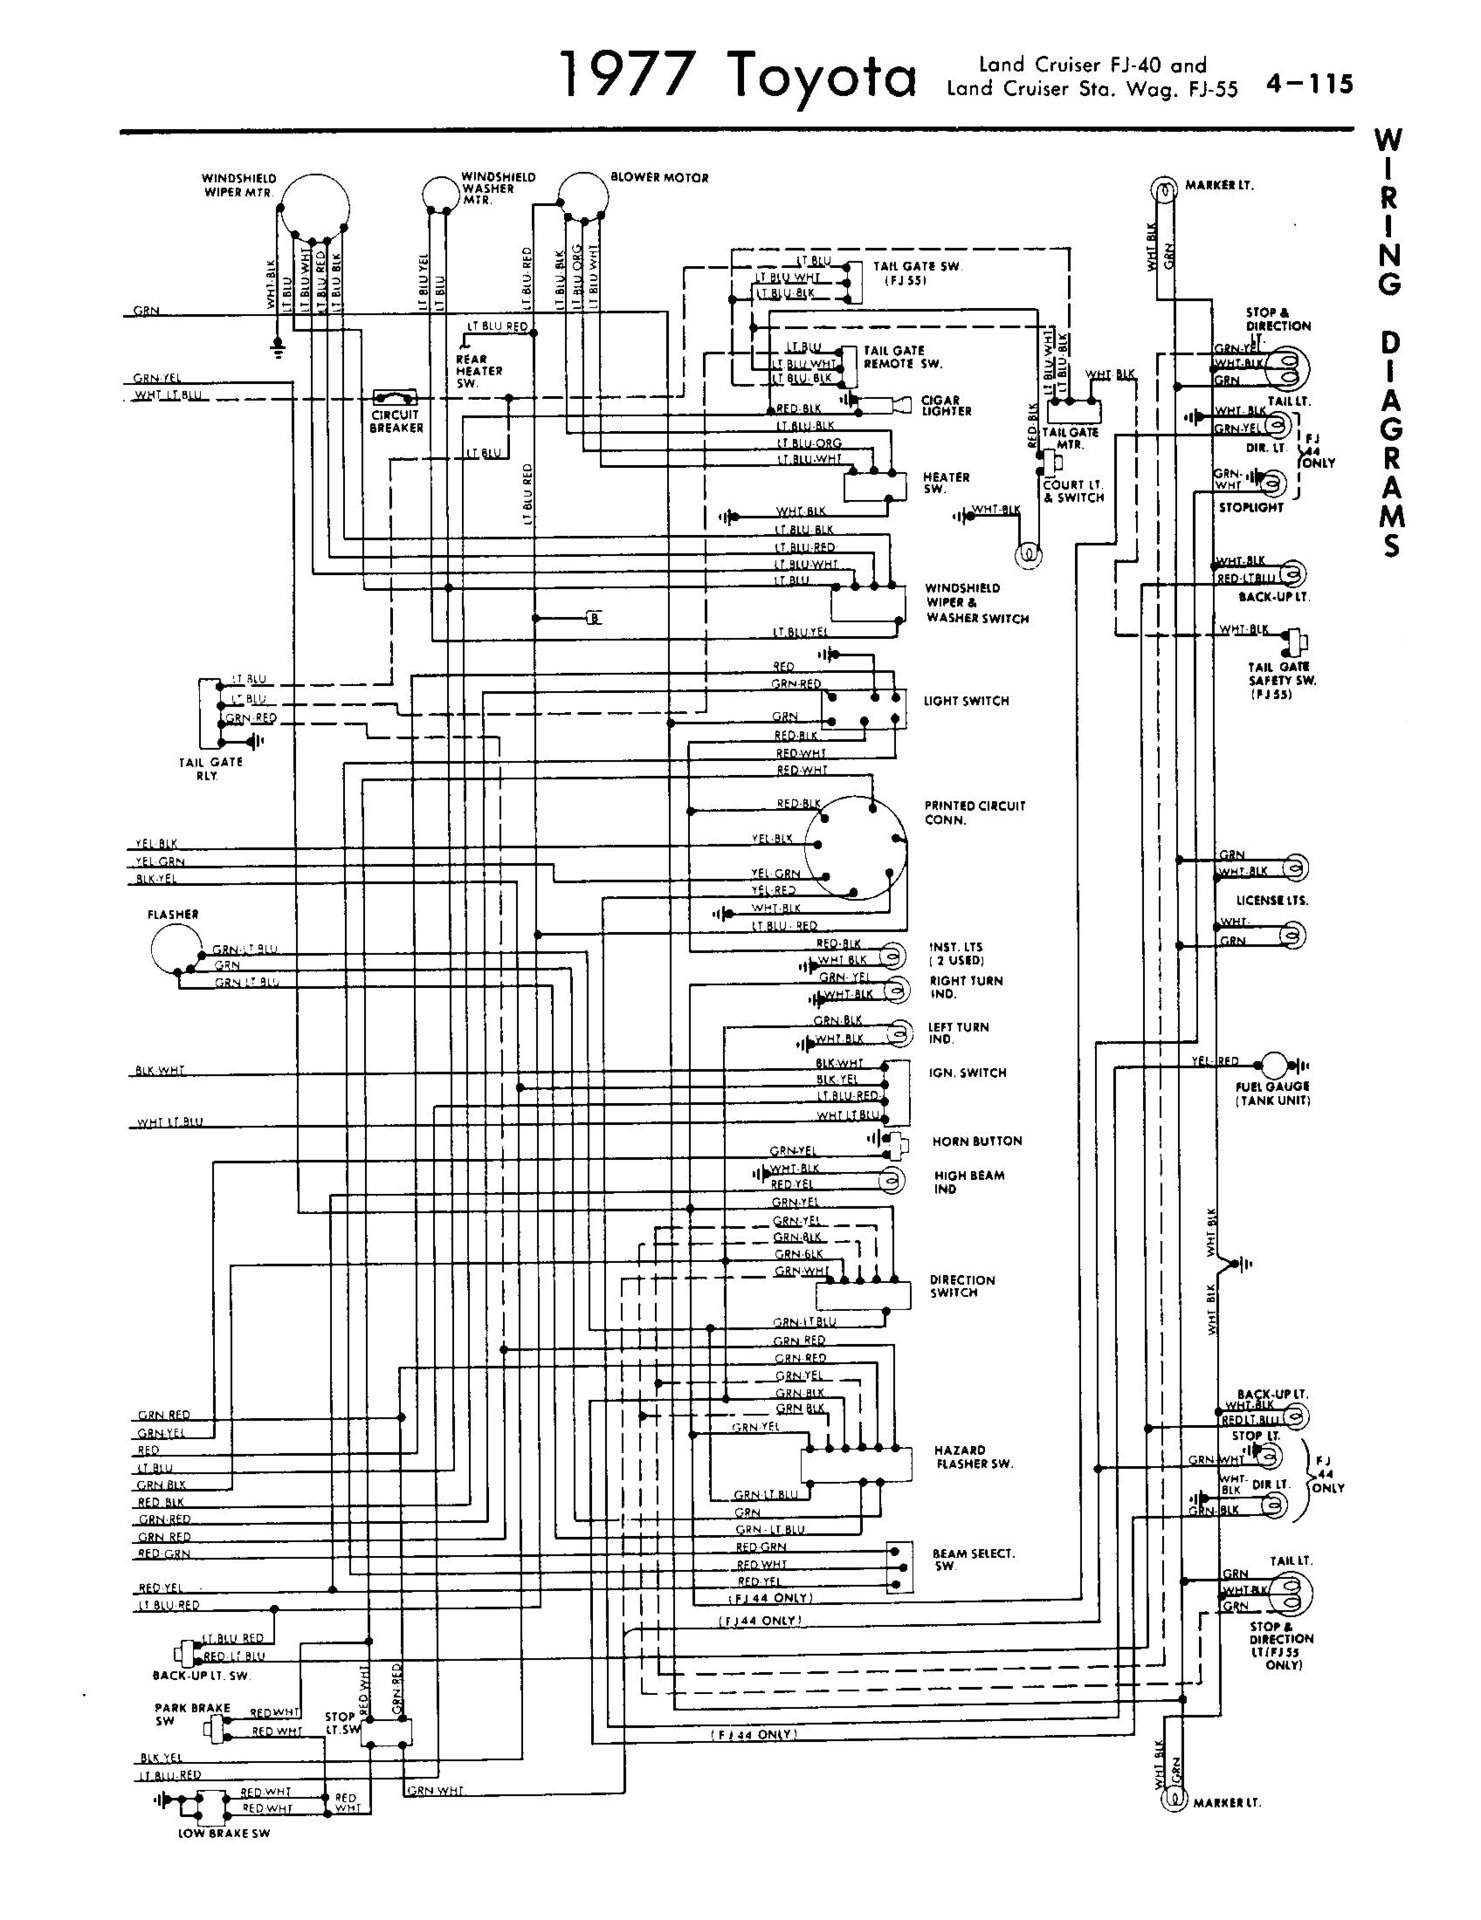 1977 Land Cruiser Wiring Diagram - 2.jpg